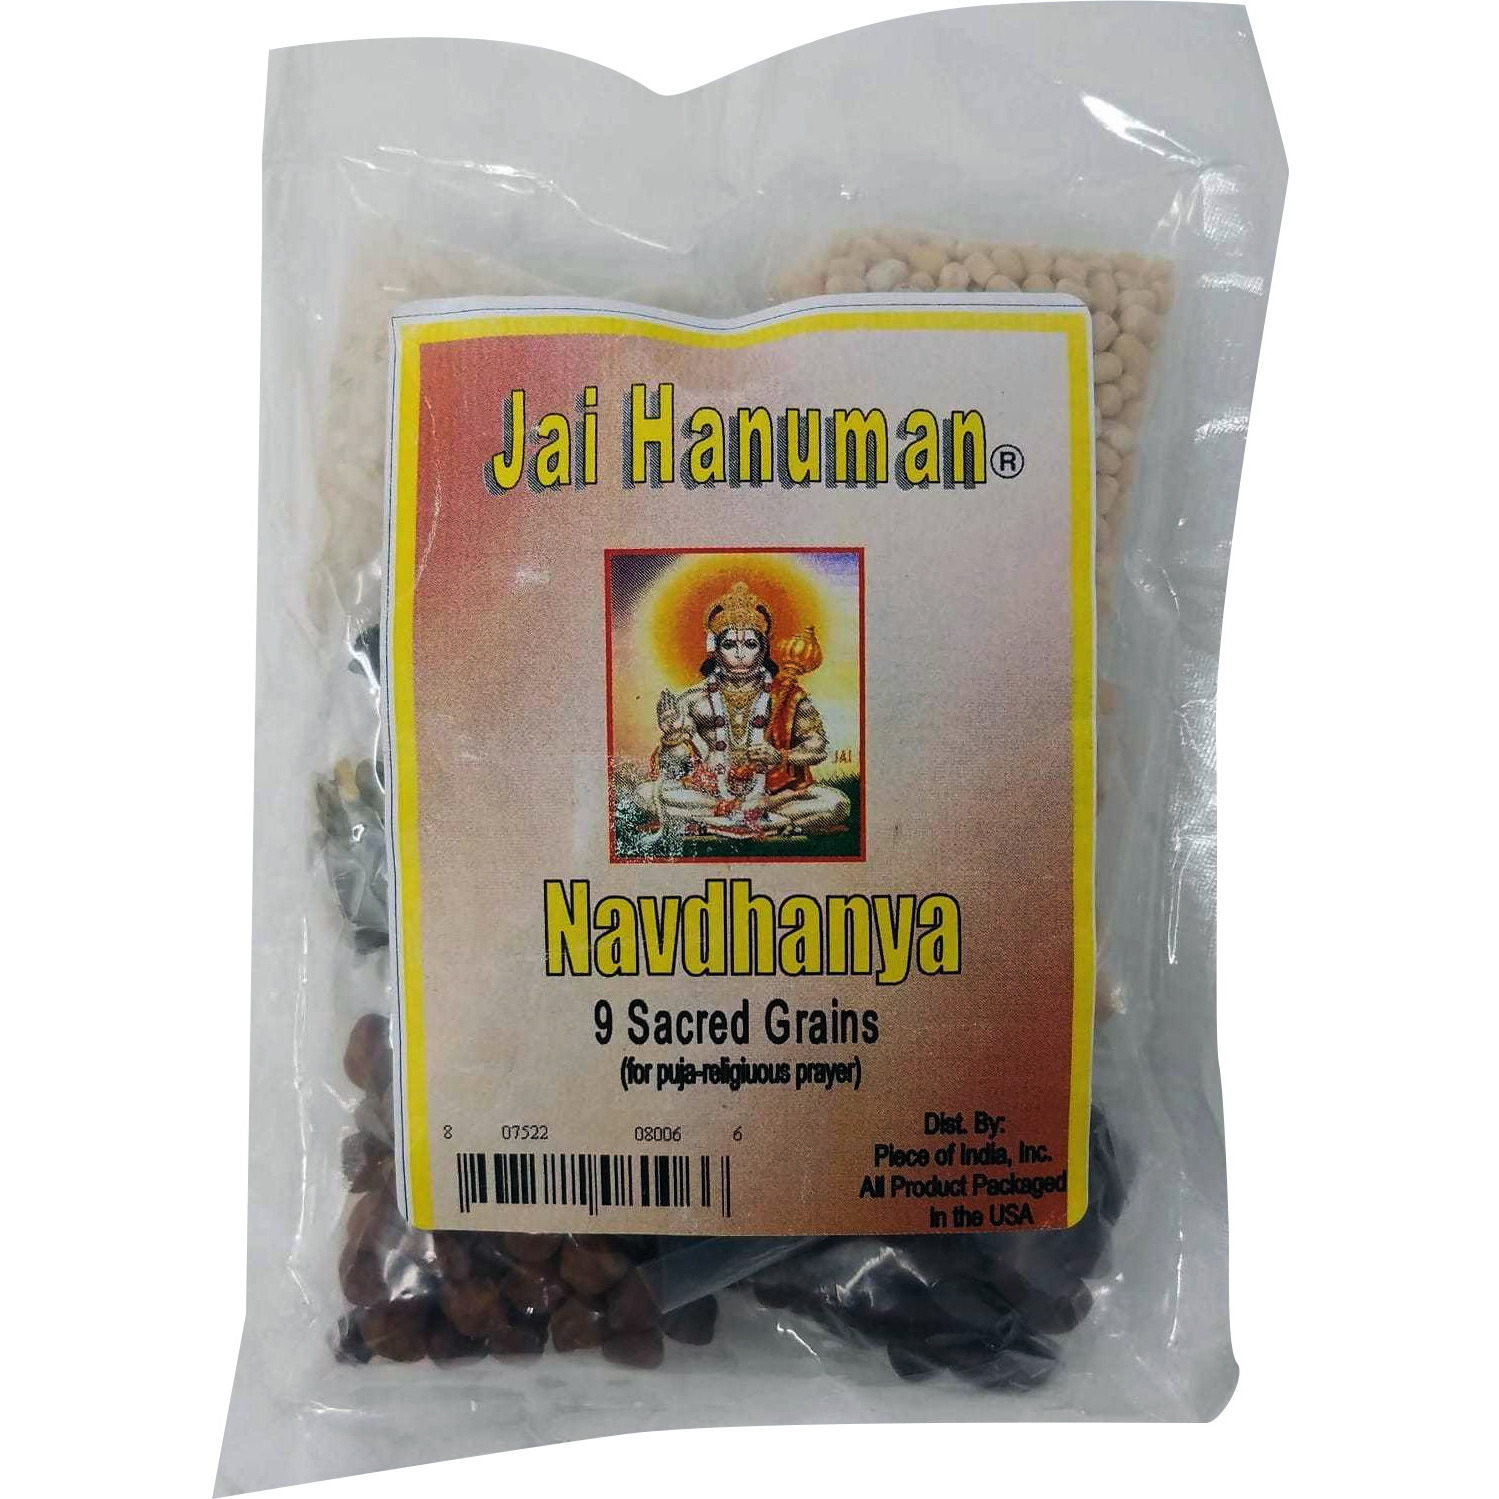 Pack of 2 - Jai Hanuman Navdhanya